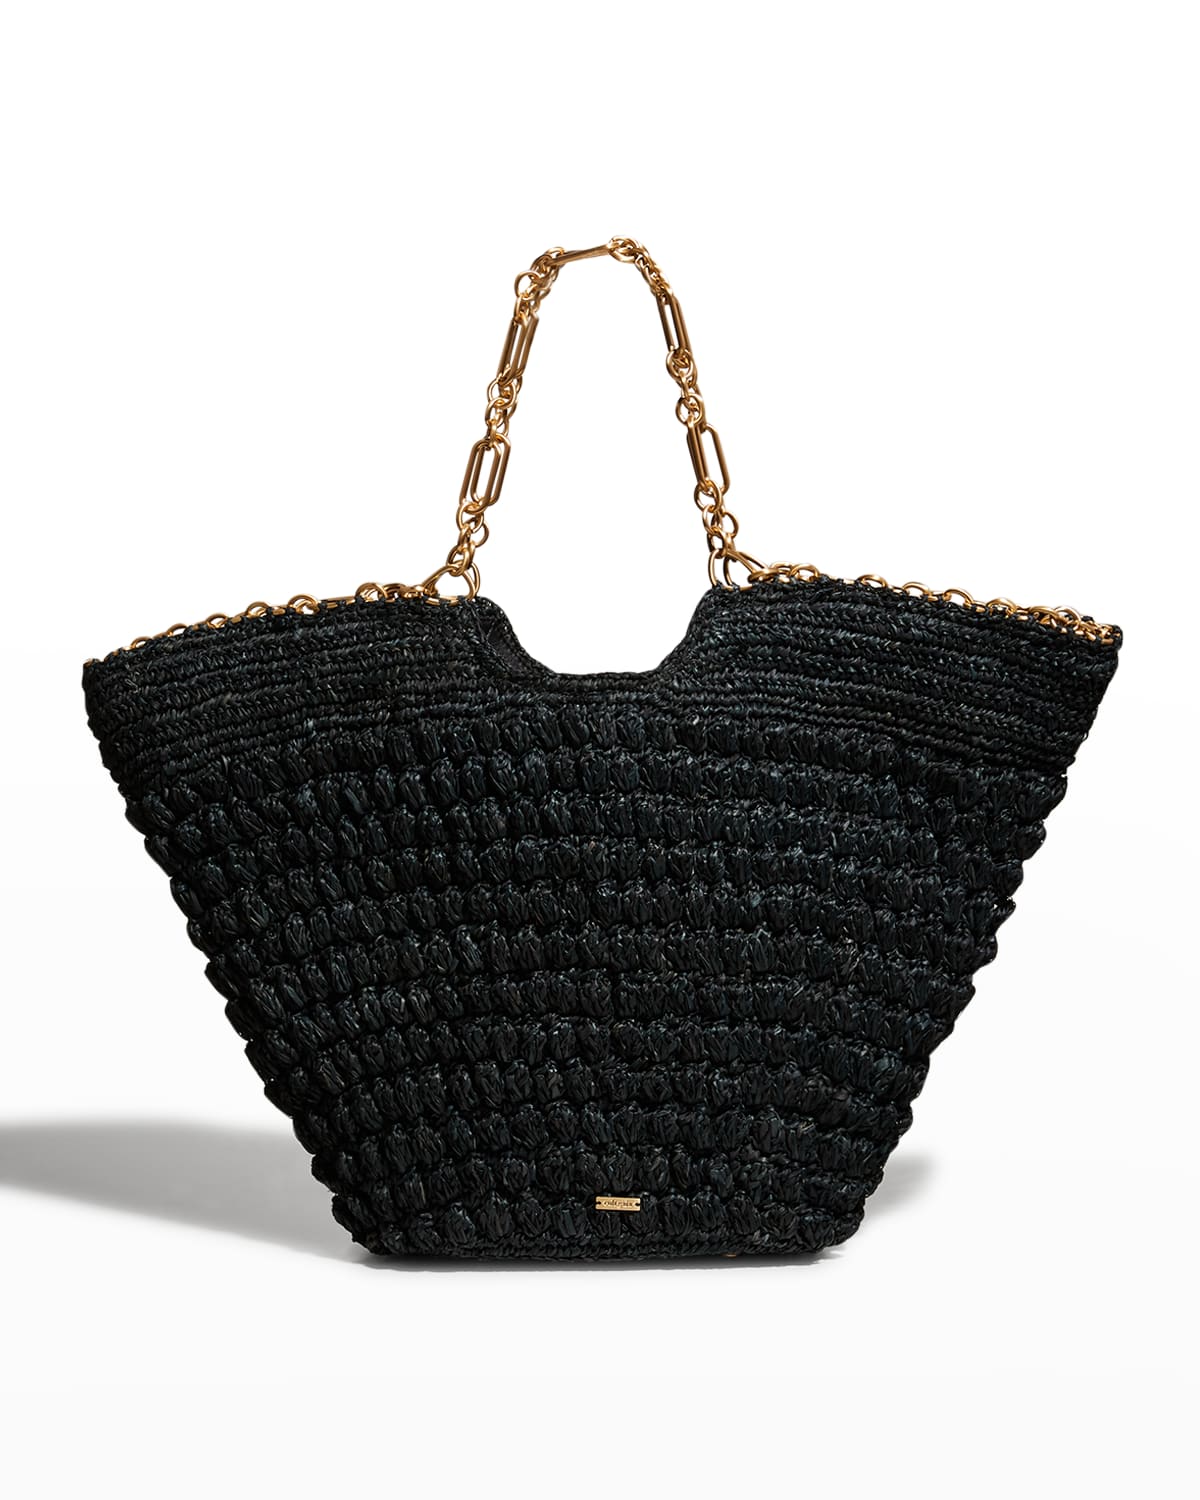 CULT GAIA Handbags for Women | ModeSens